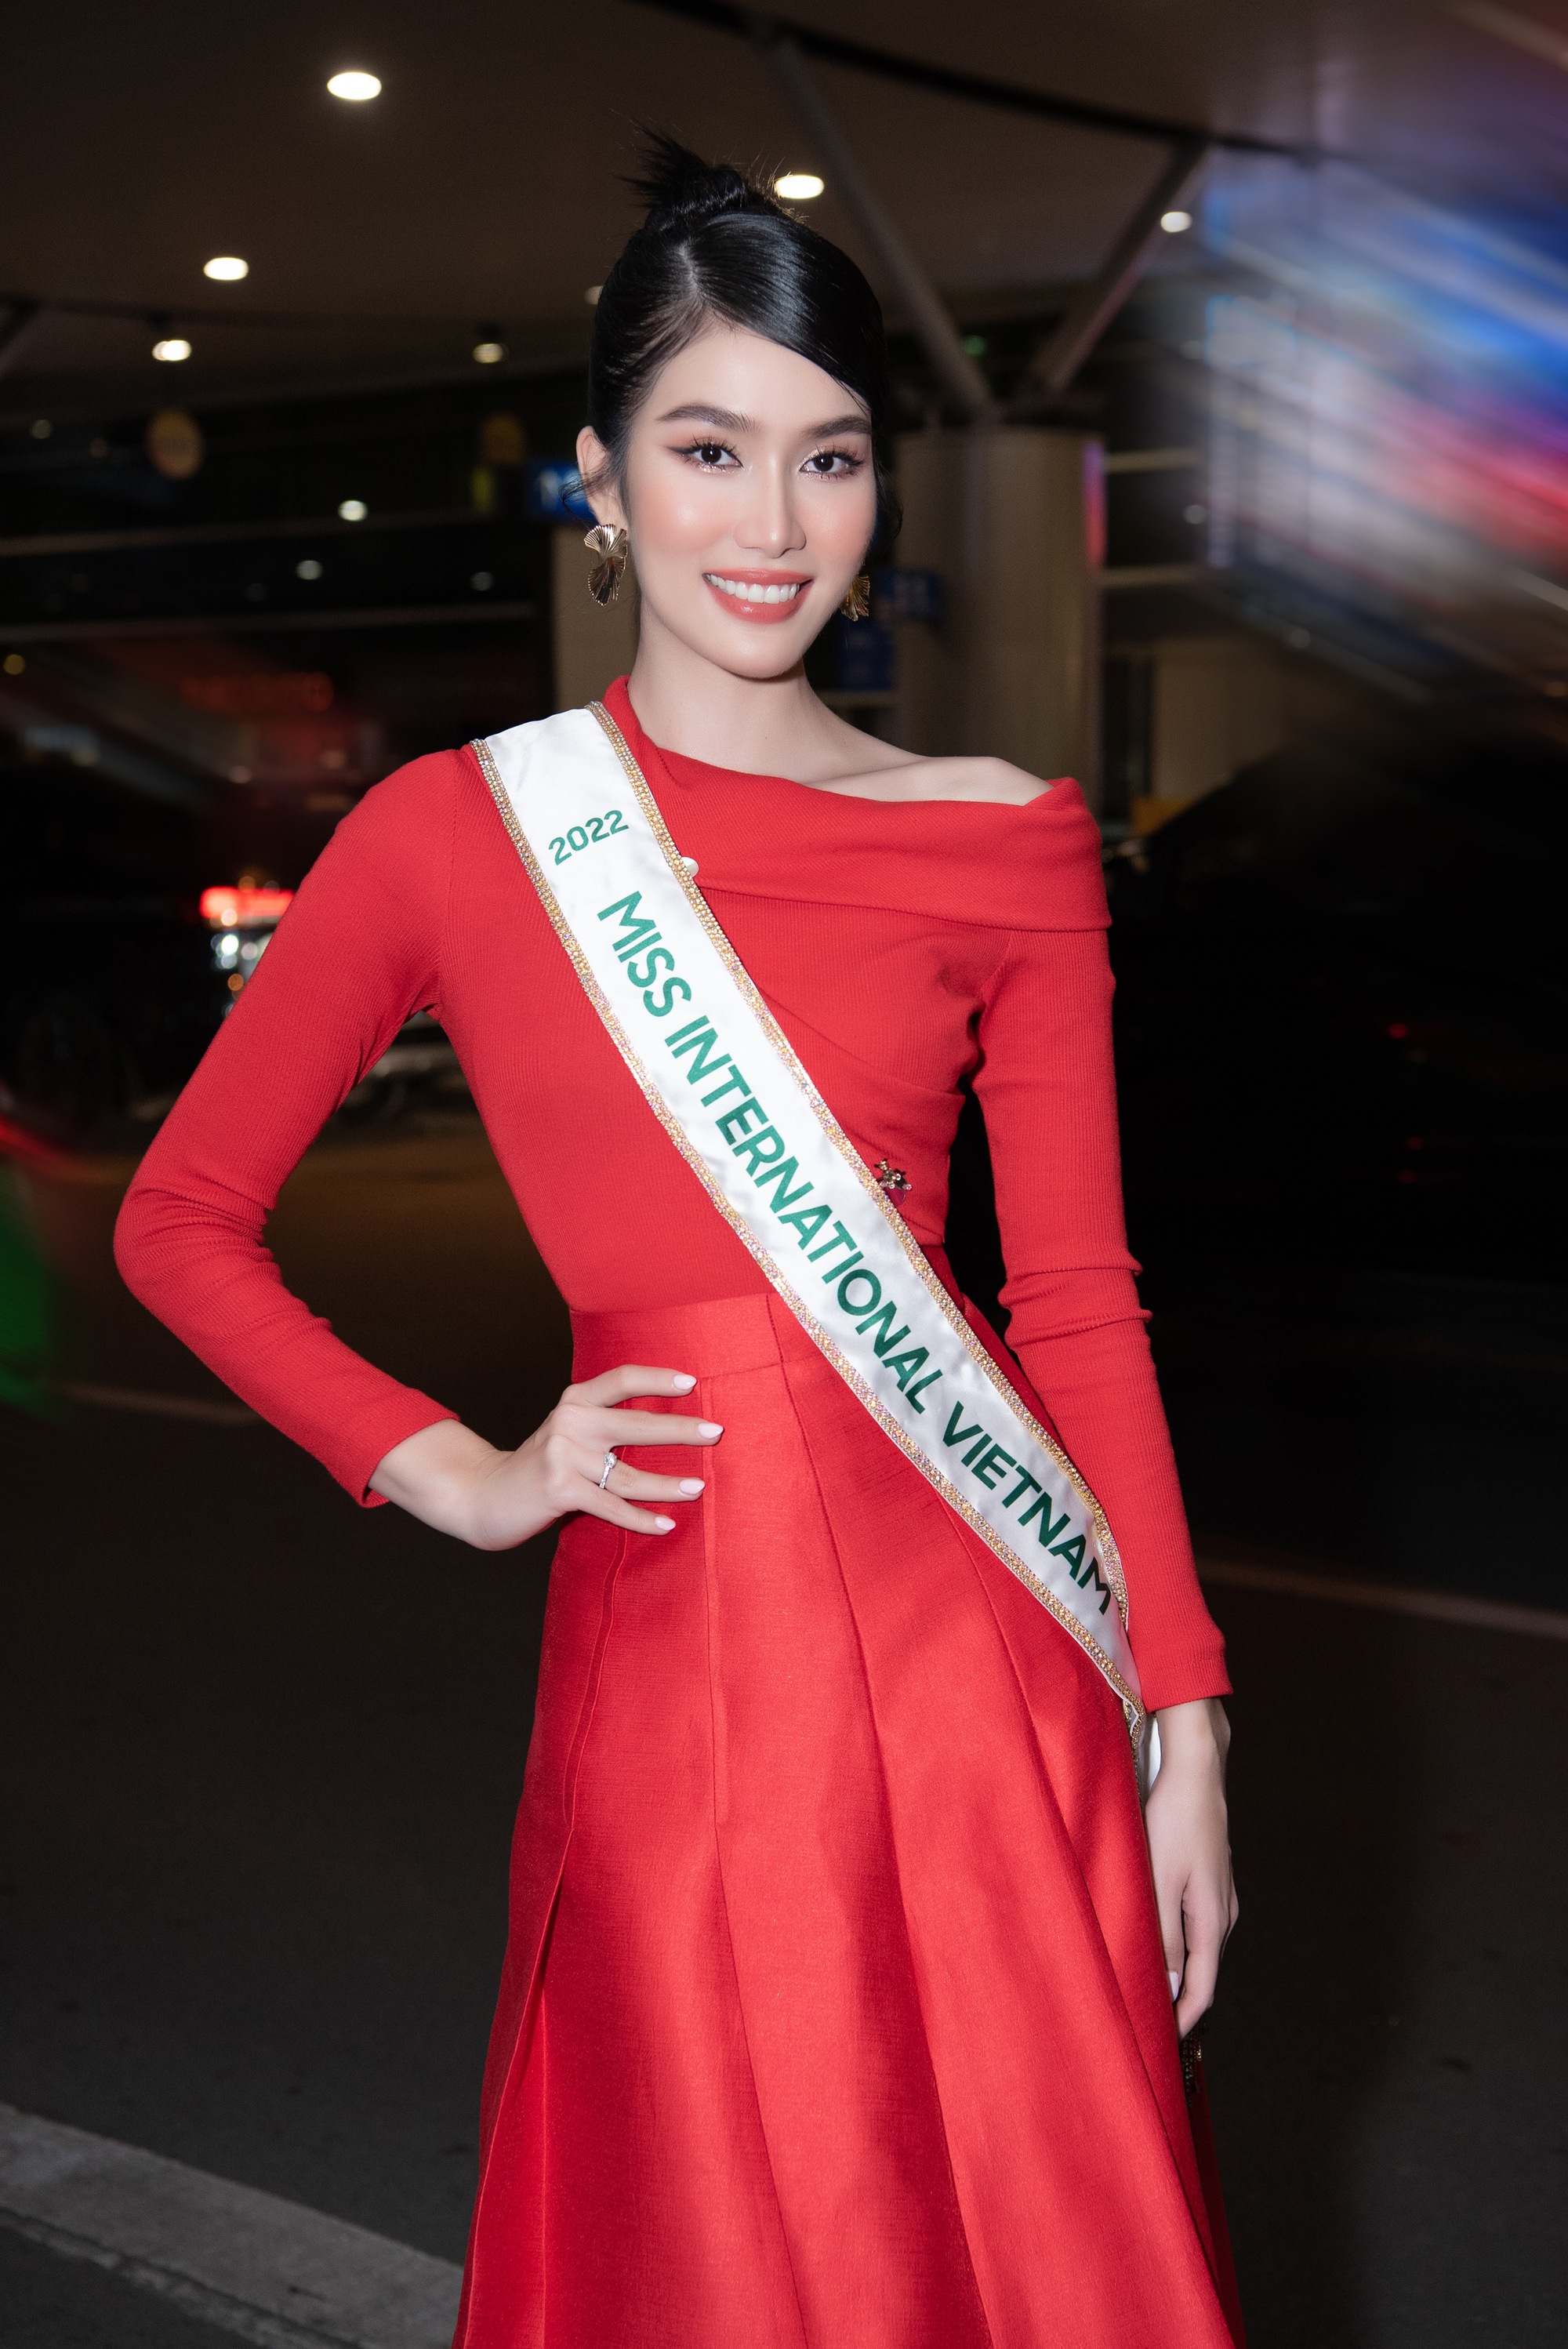 Á hậu Phương Anh xinh đẹp, lôi cuốn trong ngày đi thi Miss International 2022 - Ảnh 1.